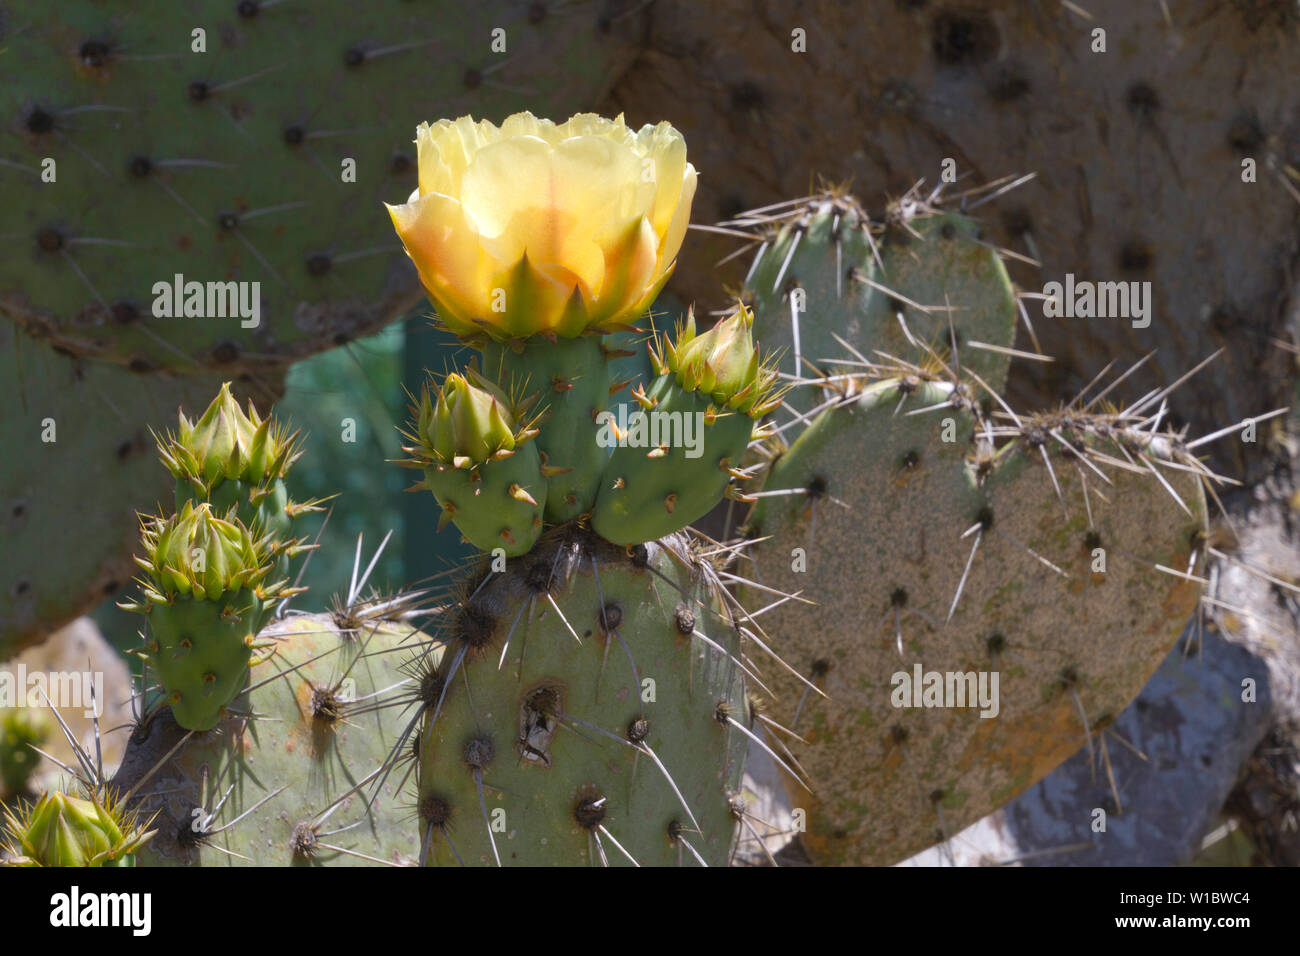 Detalle de una flor de nopal con una gran flor amarilla, espinas y brotes Foto de stock